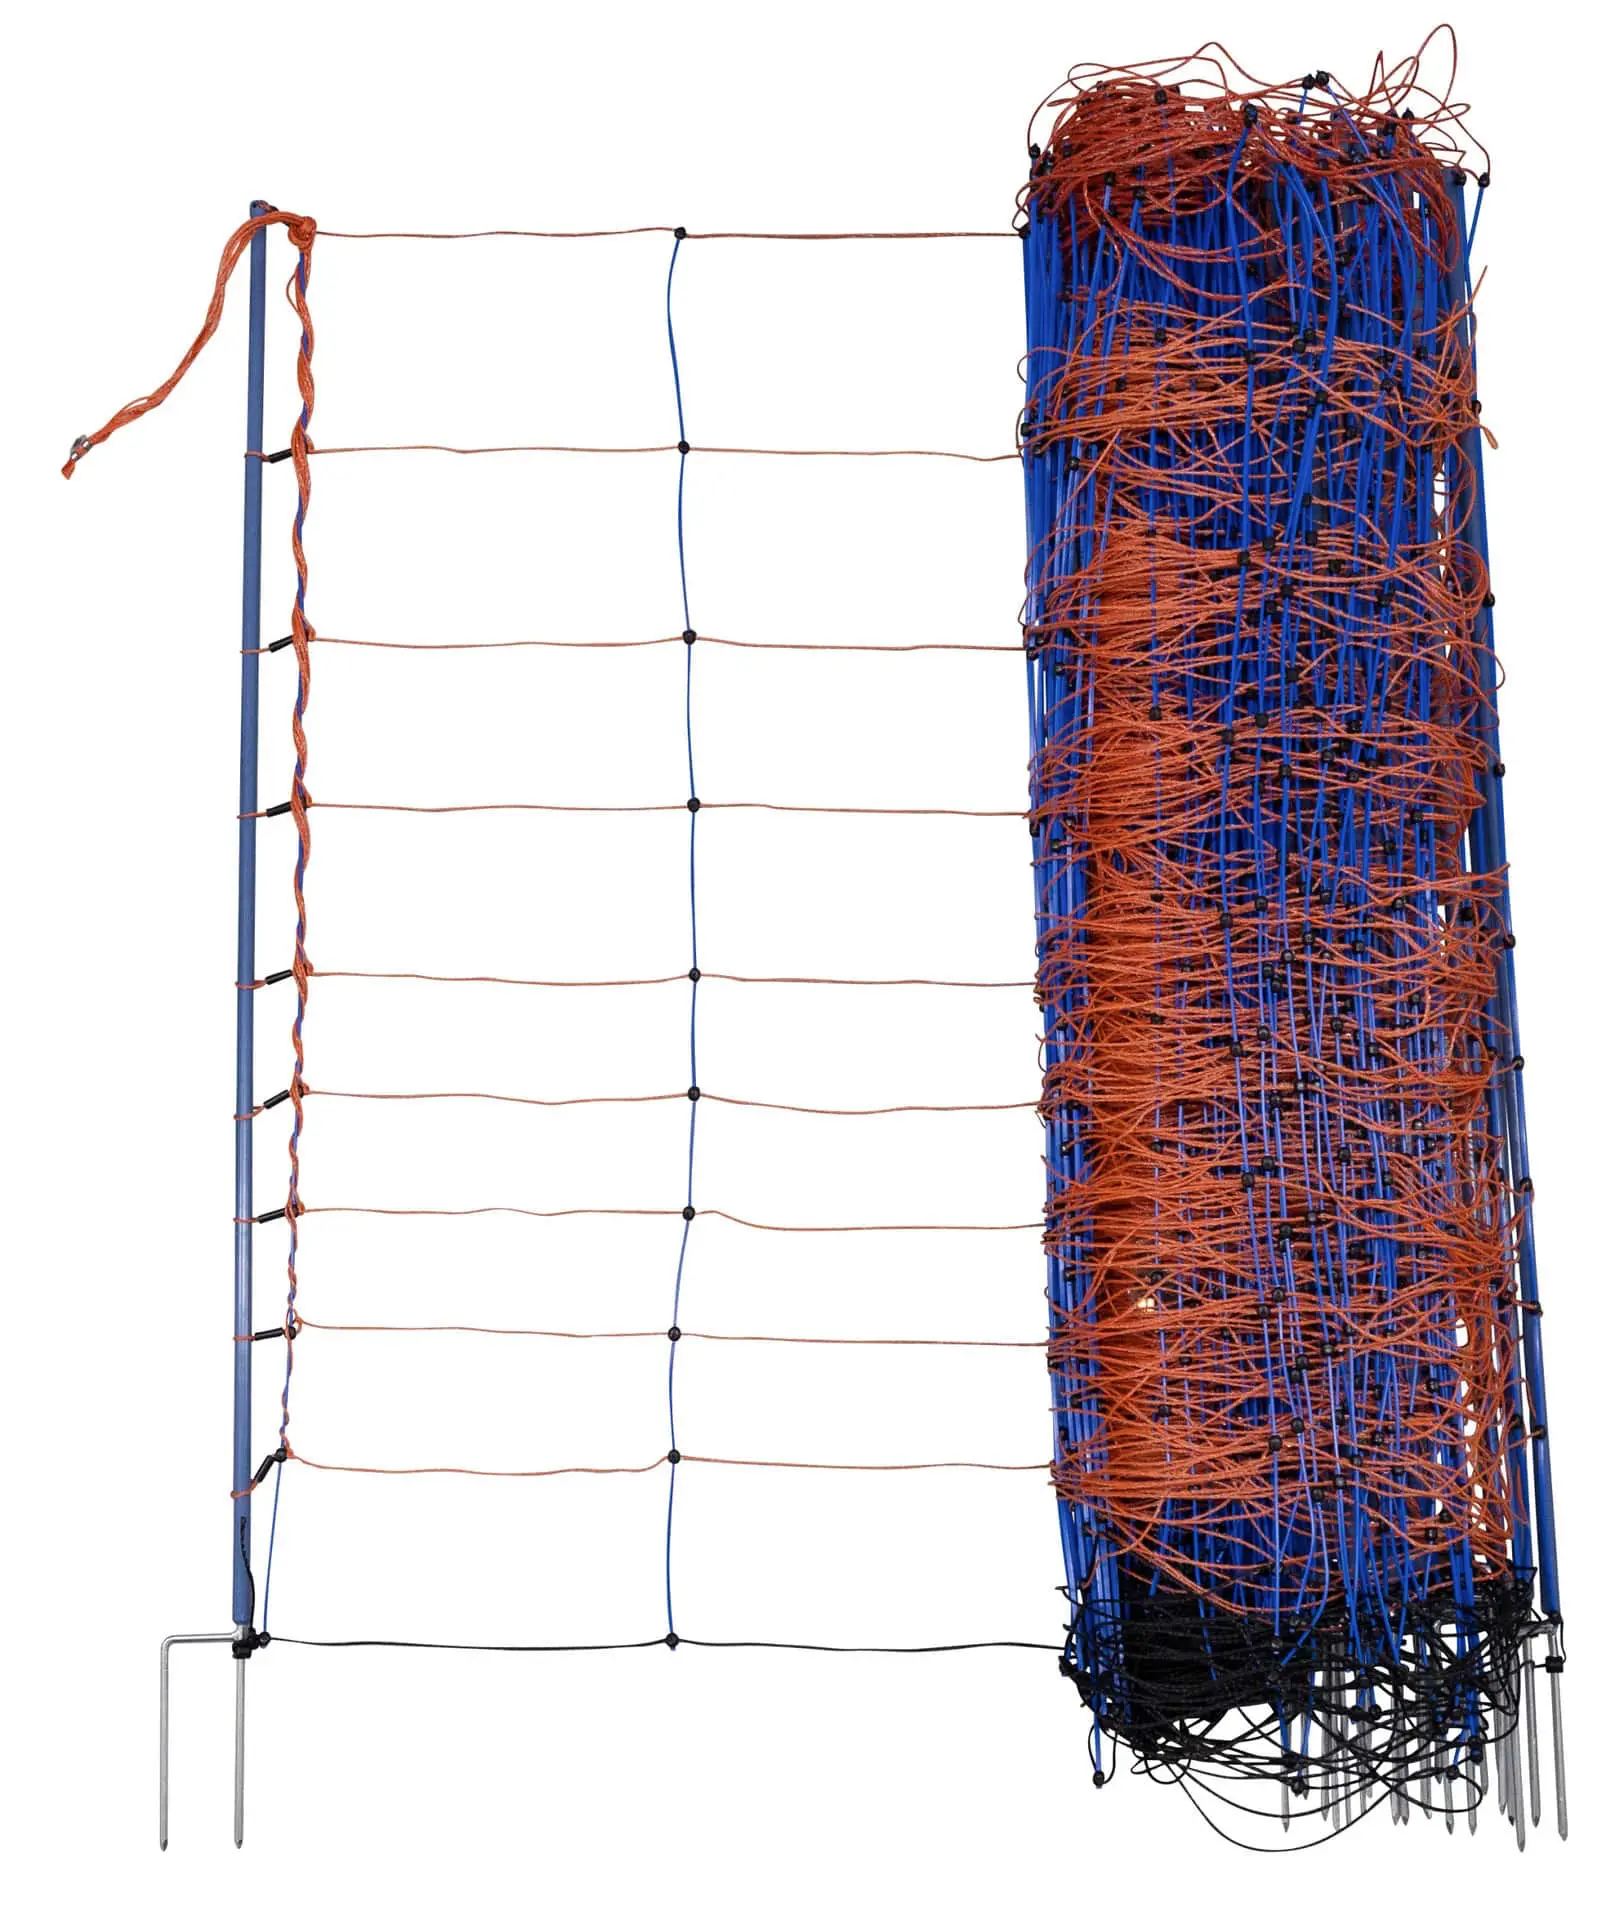 Birkaháló TitanNet Premium 50m x 108 cm narancssárga/kék dupla hegy